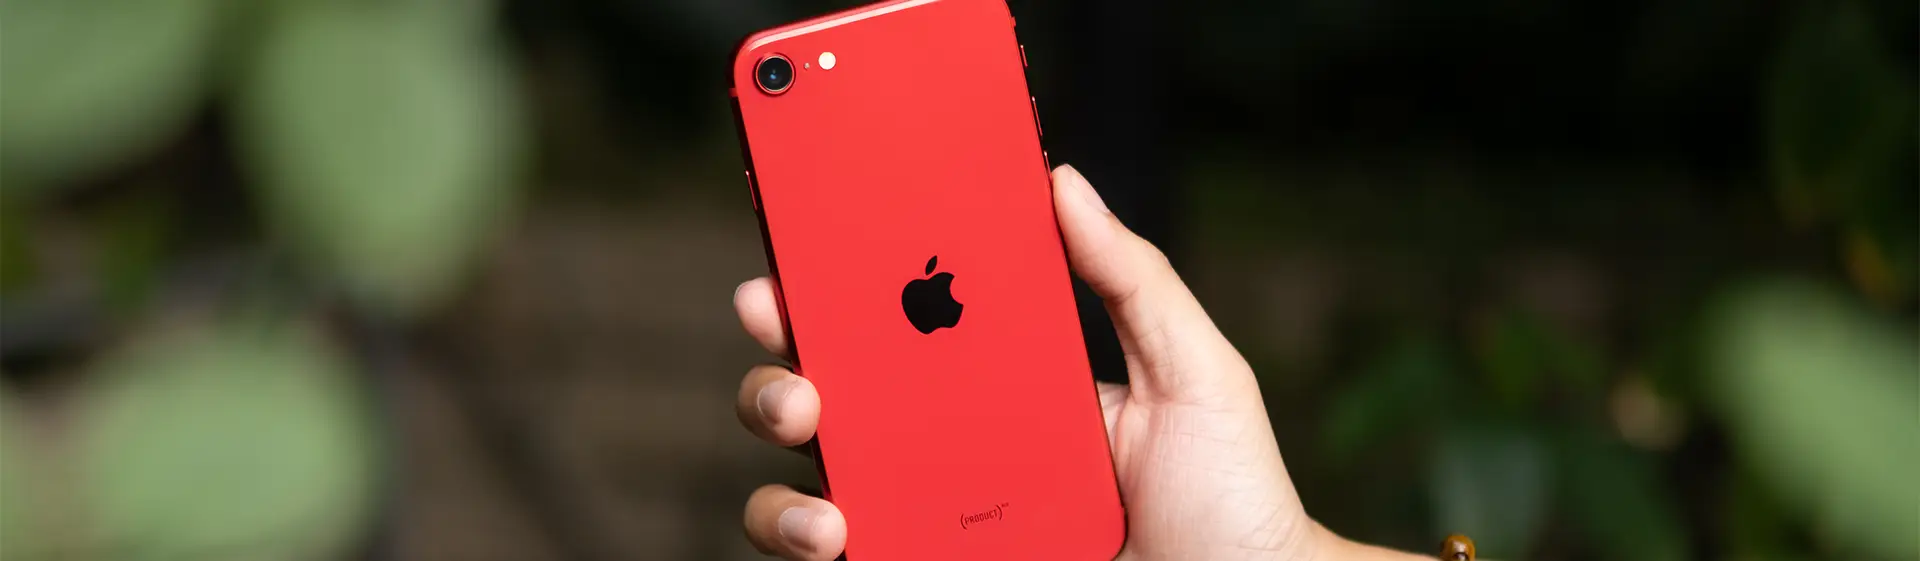 iPhone barato na cor vermelha na mão de pessoa com fundo desfocado